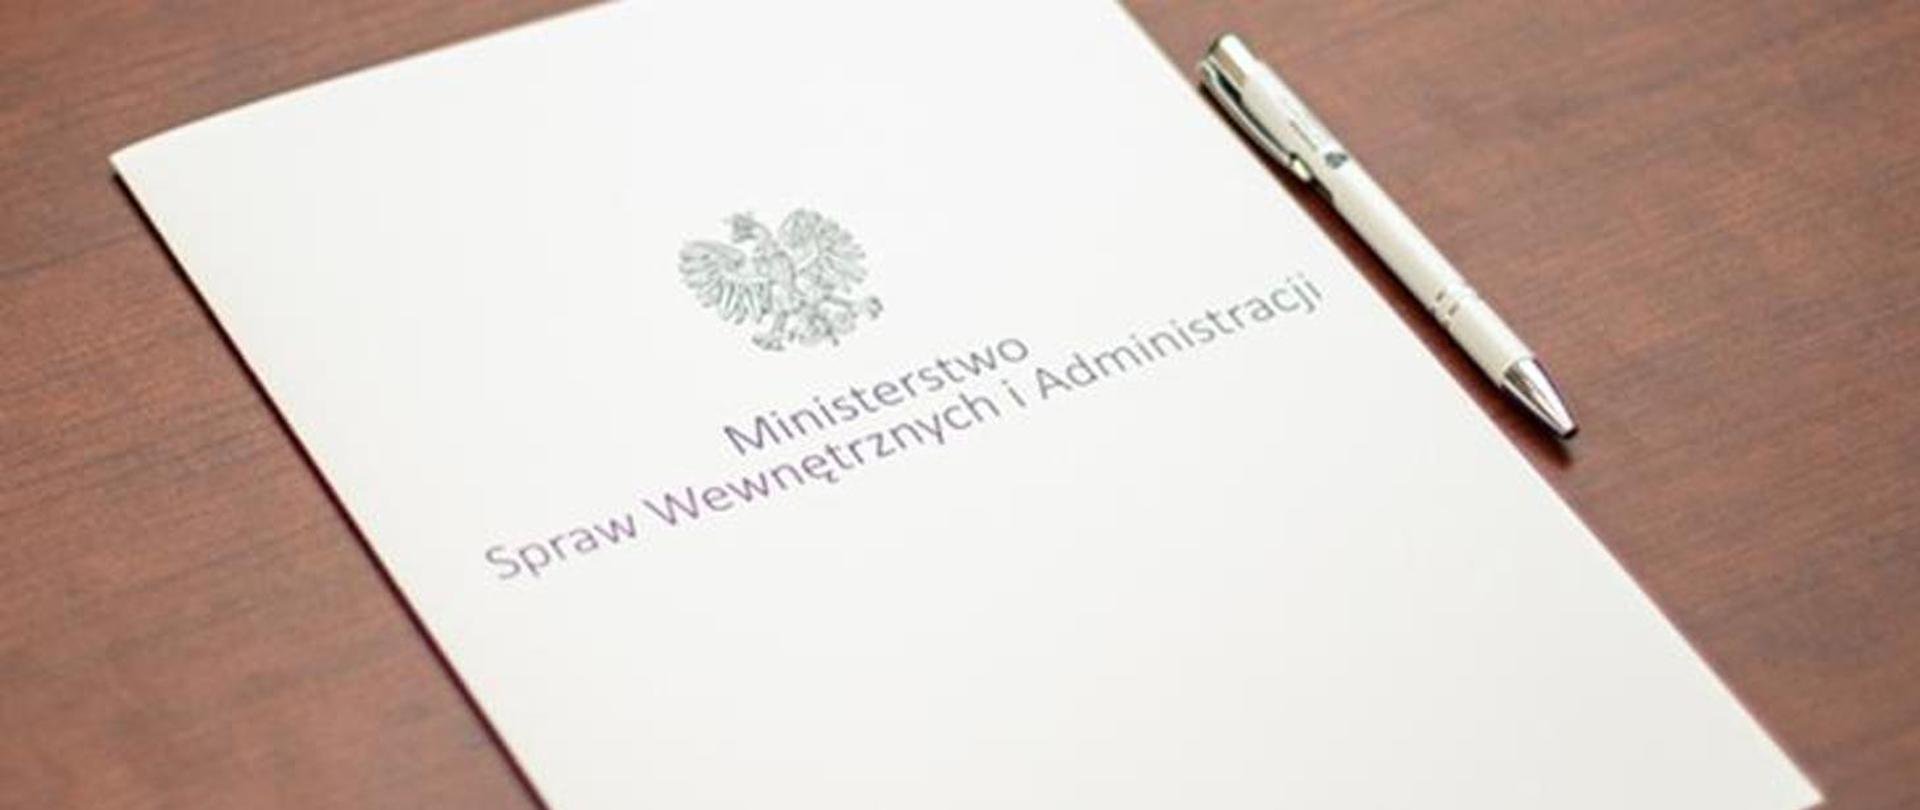 zdjęcie przedstawia teczkę do przechowywania dokumentów zatytułowaną Ministerstwo Spraw Wewnętrznych i Administracji 